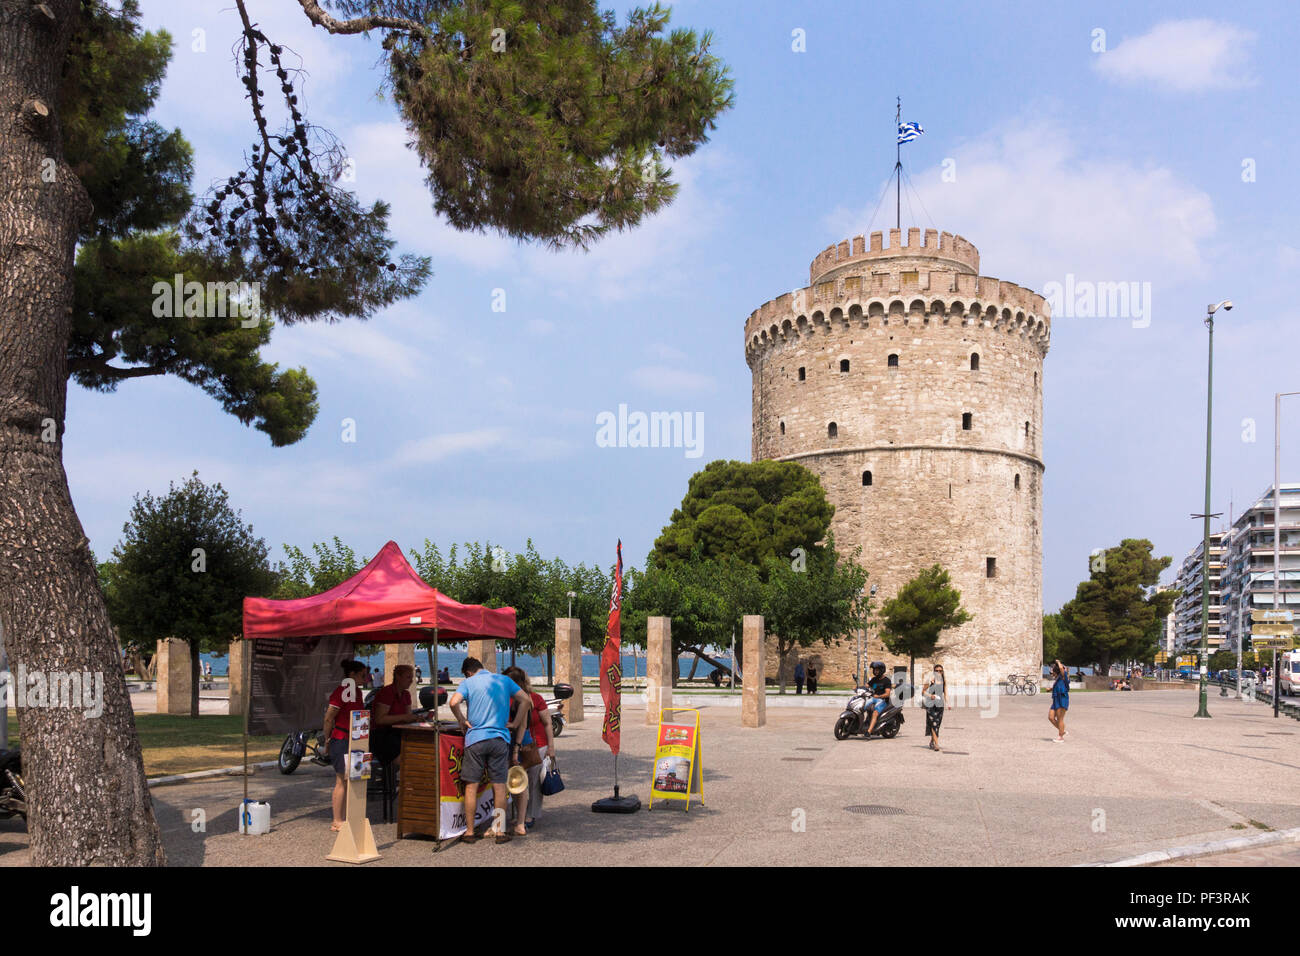 La Tour Blanche de Thessalonique, un monument forteresse ottomane et ancienne prison et une destination touristique populaire en Grèce Banque D'Images